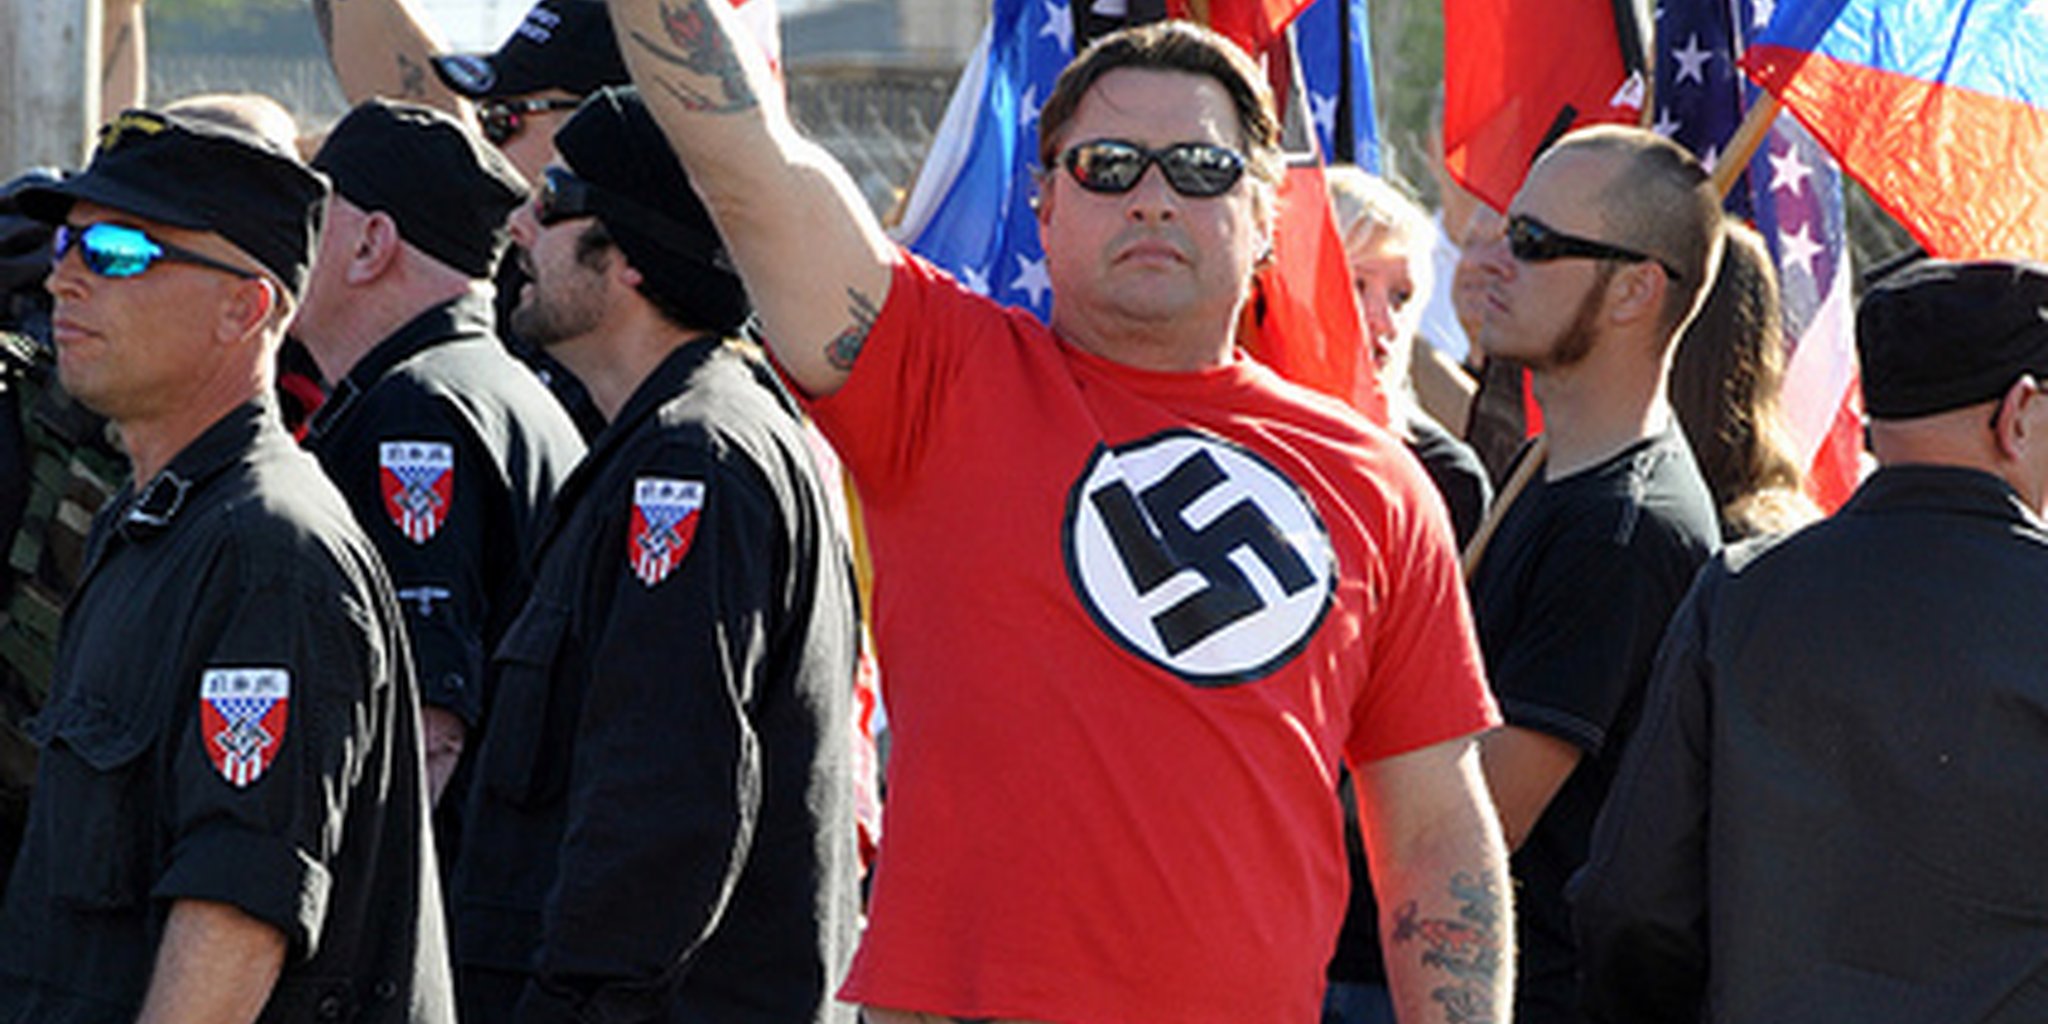 Un supremacista blanco viste una camisa con la esvástica nazi. Foto cortesía de dailydot.com